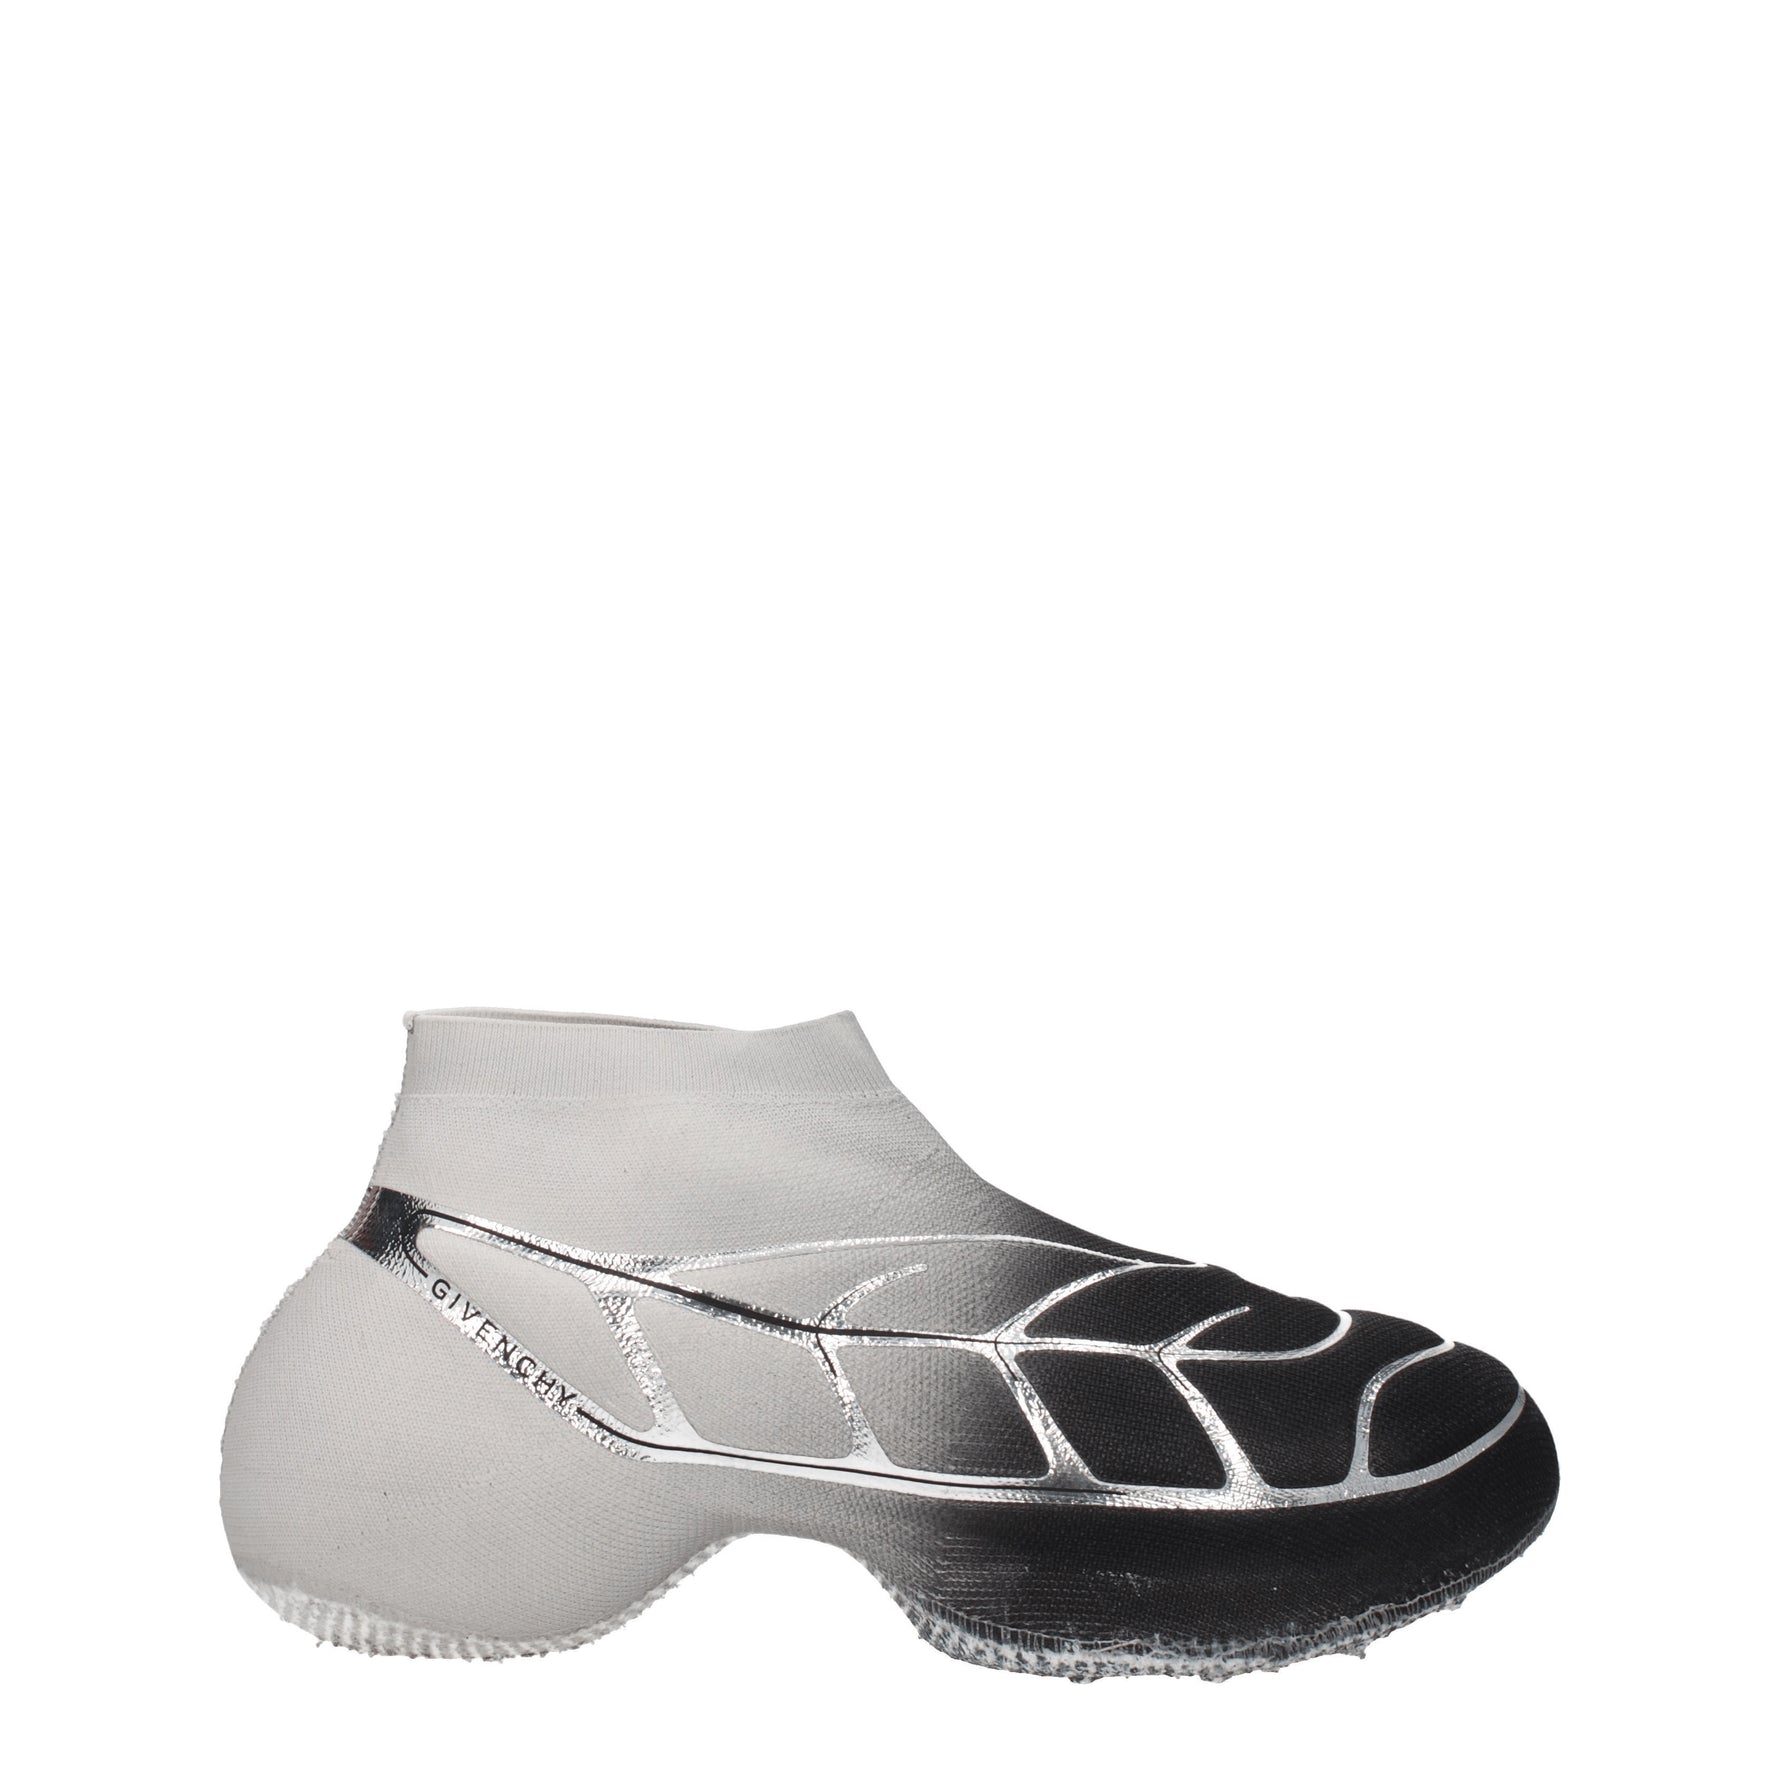 Givenchy Sneakers tk 360 Uomo Tessuto Nero Argento